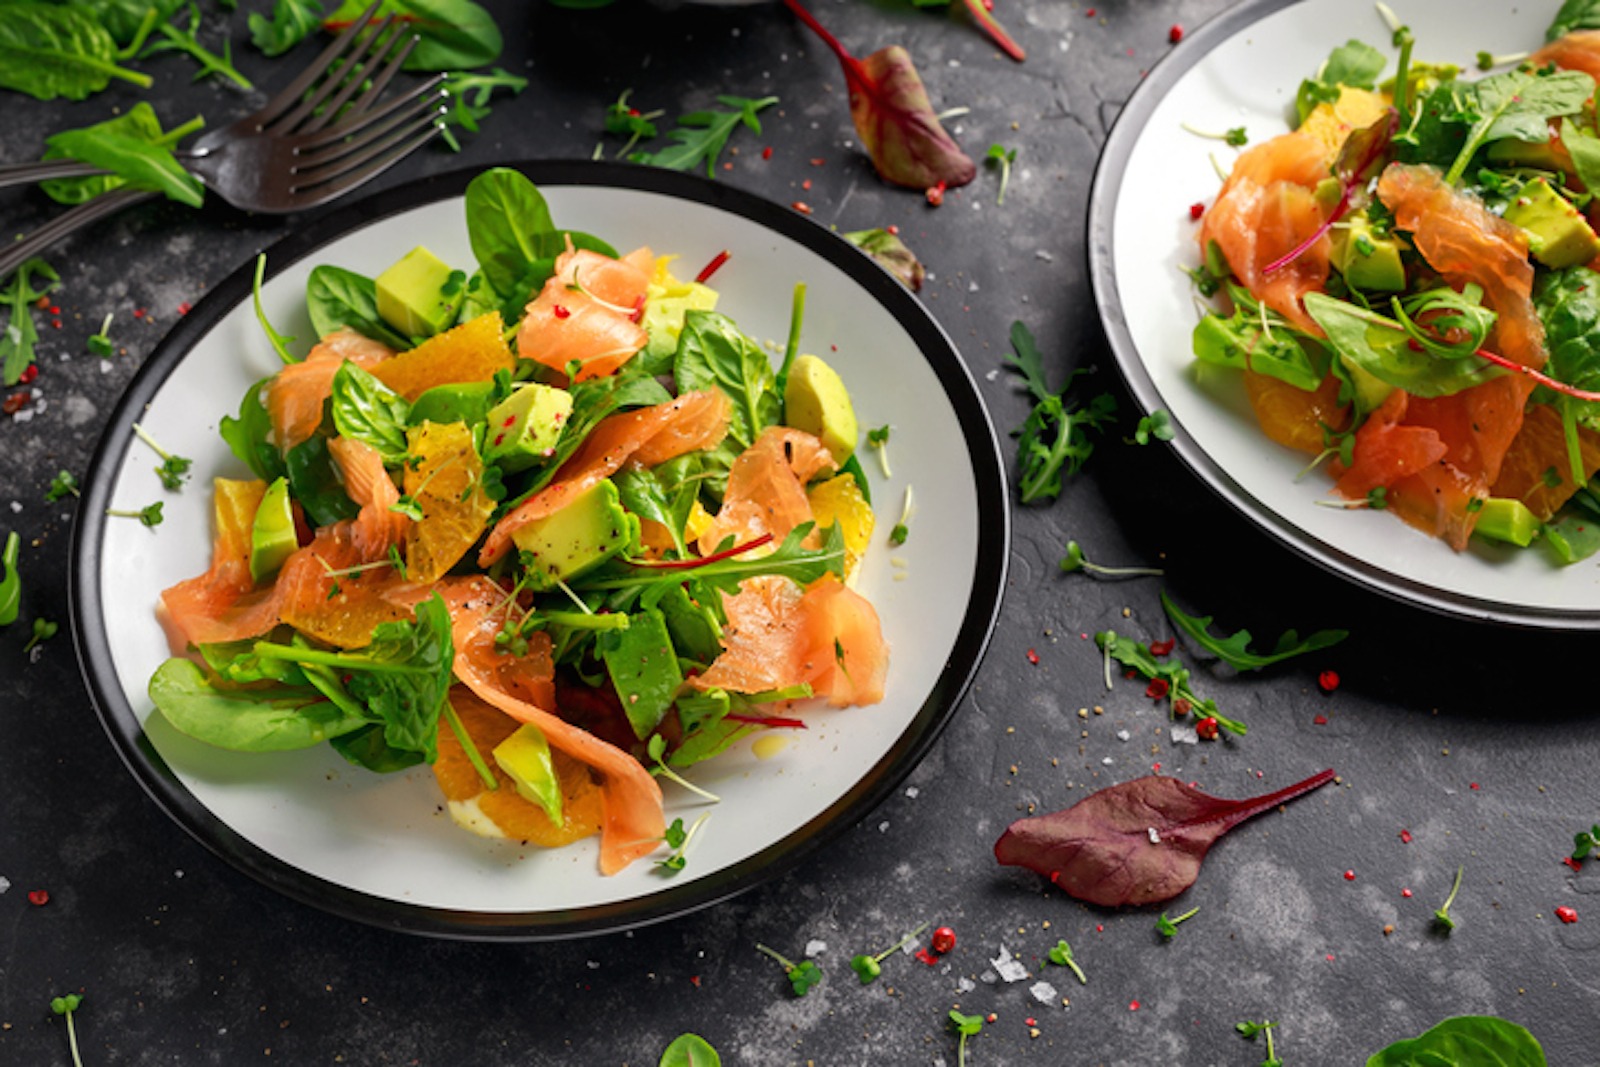 Il salmone nell’insalata: 5 idee per abbinarlo